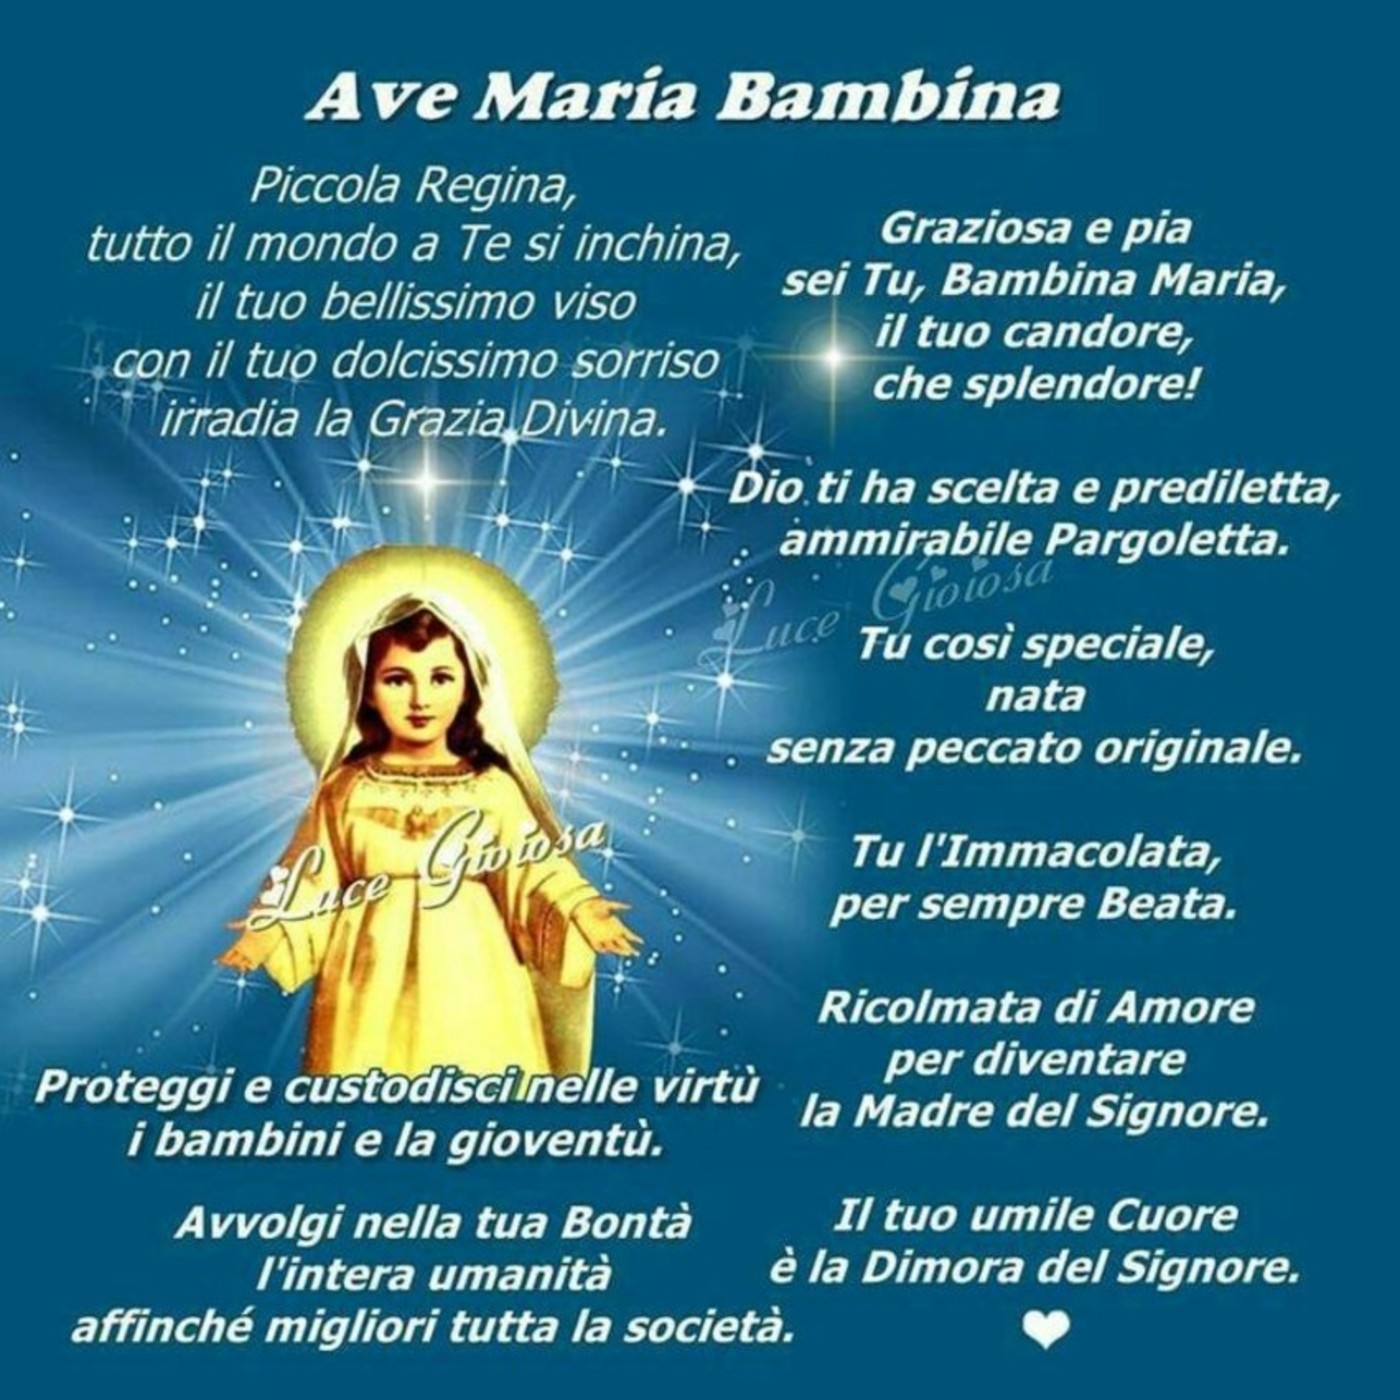 Ave Maria bambina